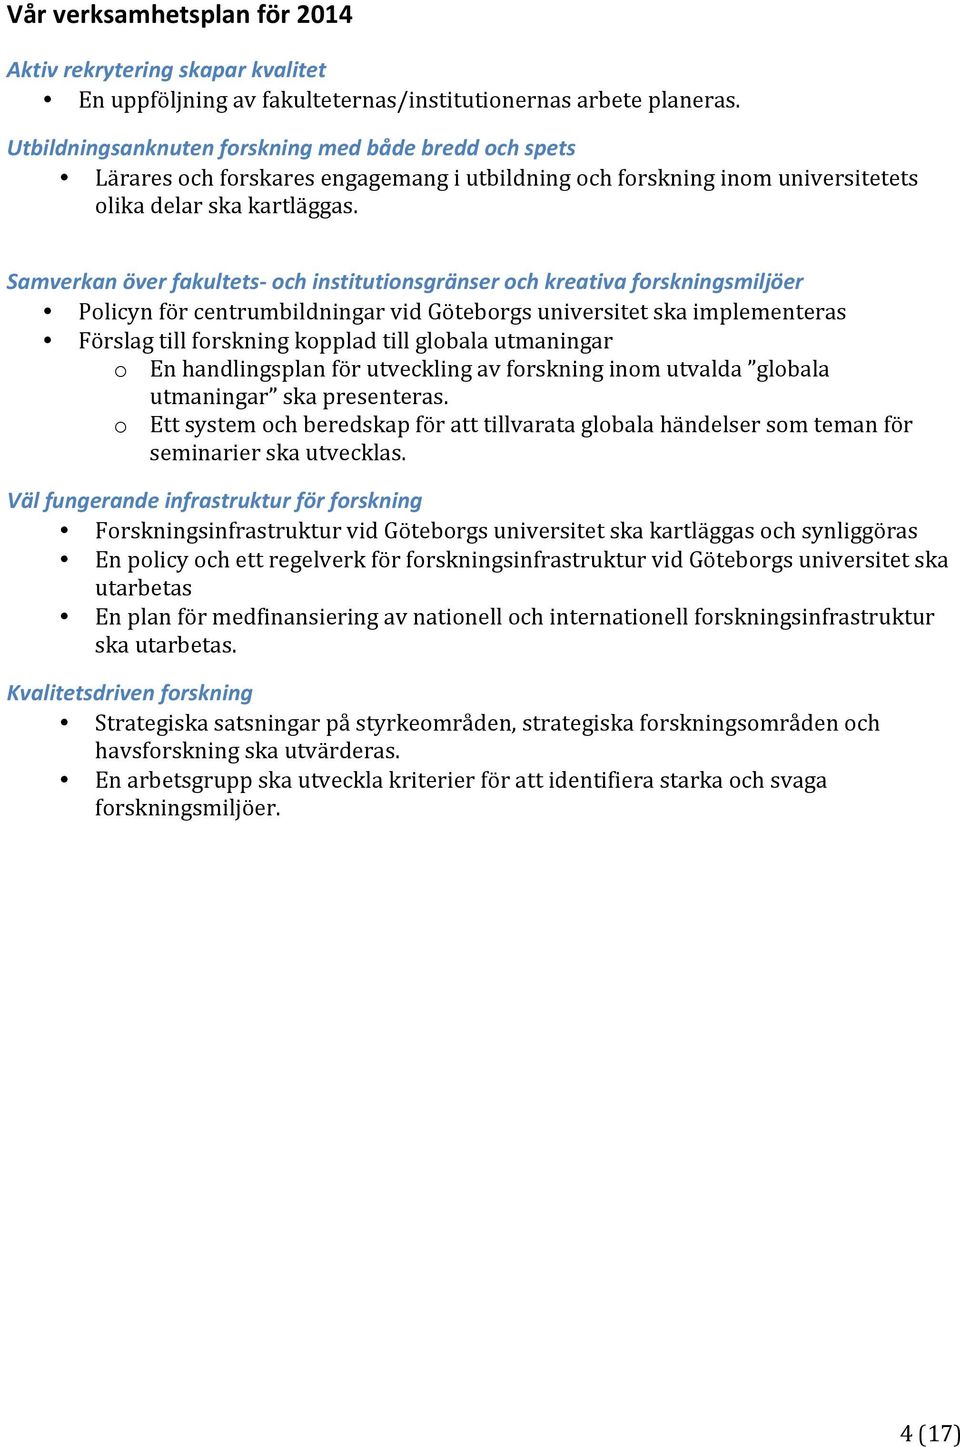 Samverkan över fakultets- och institutionsgränser och kreativa forskningsmiljöer Policyn för centrumbildningar vid Göteborgs universitet ska implementeras Förslag till forskning kopplad till globala